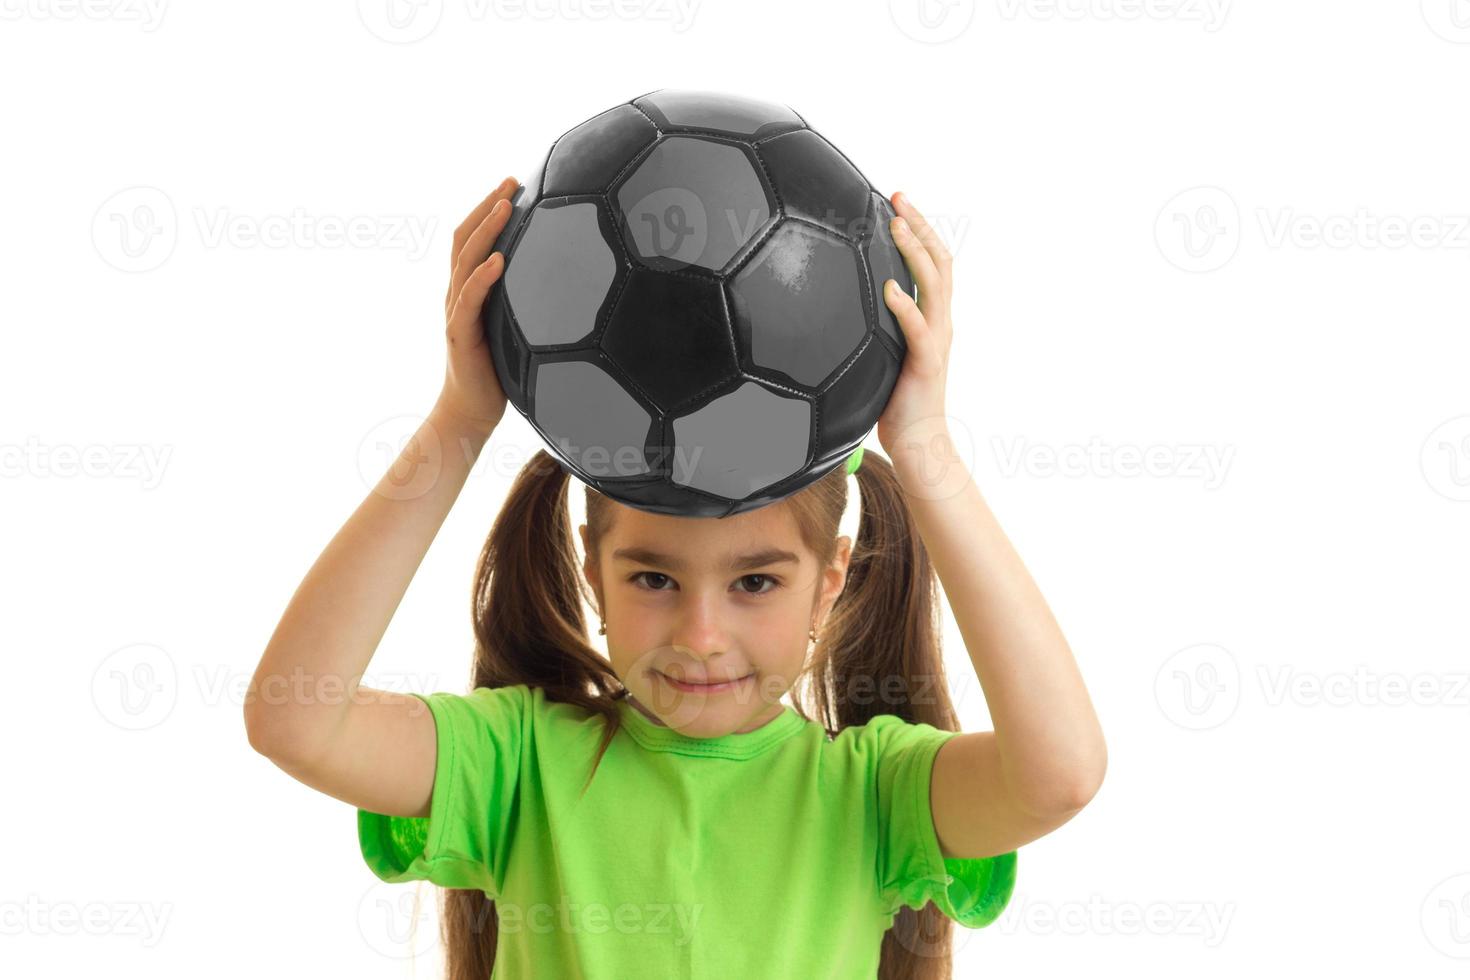 jolie petite fille en chemise verte avec un ballon de foot dans les mains photo